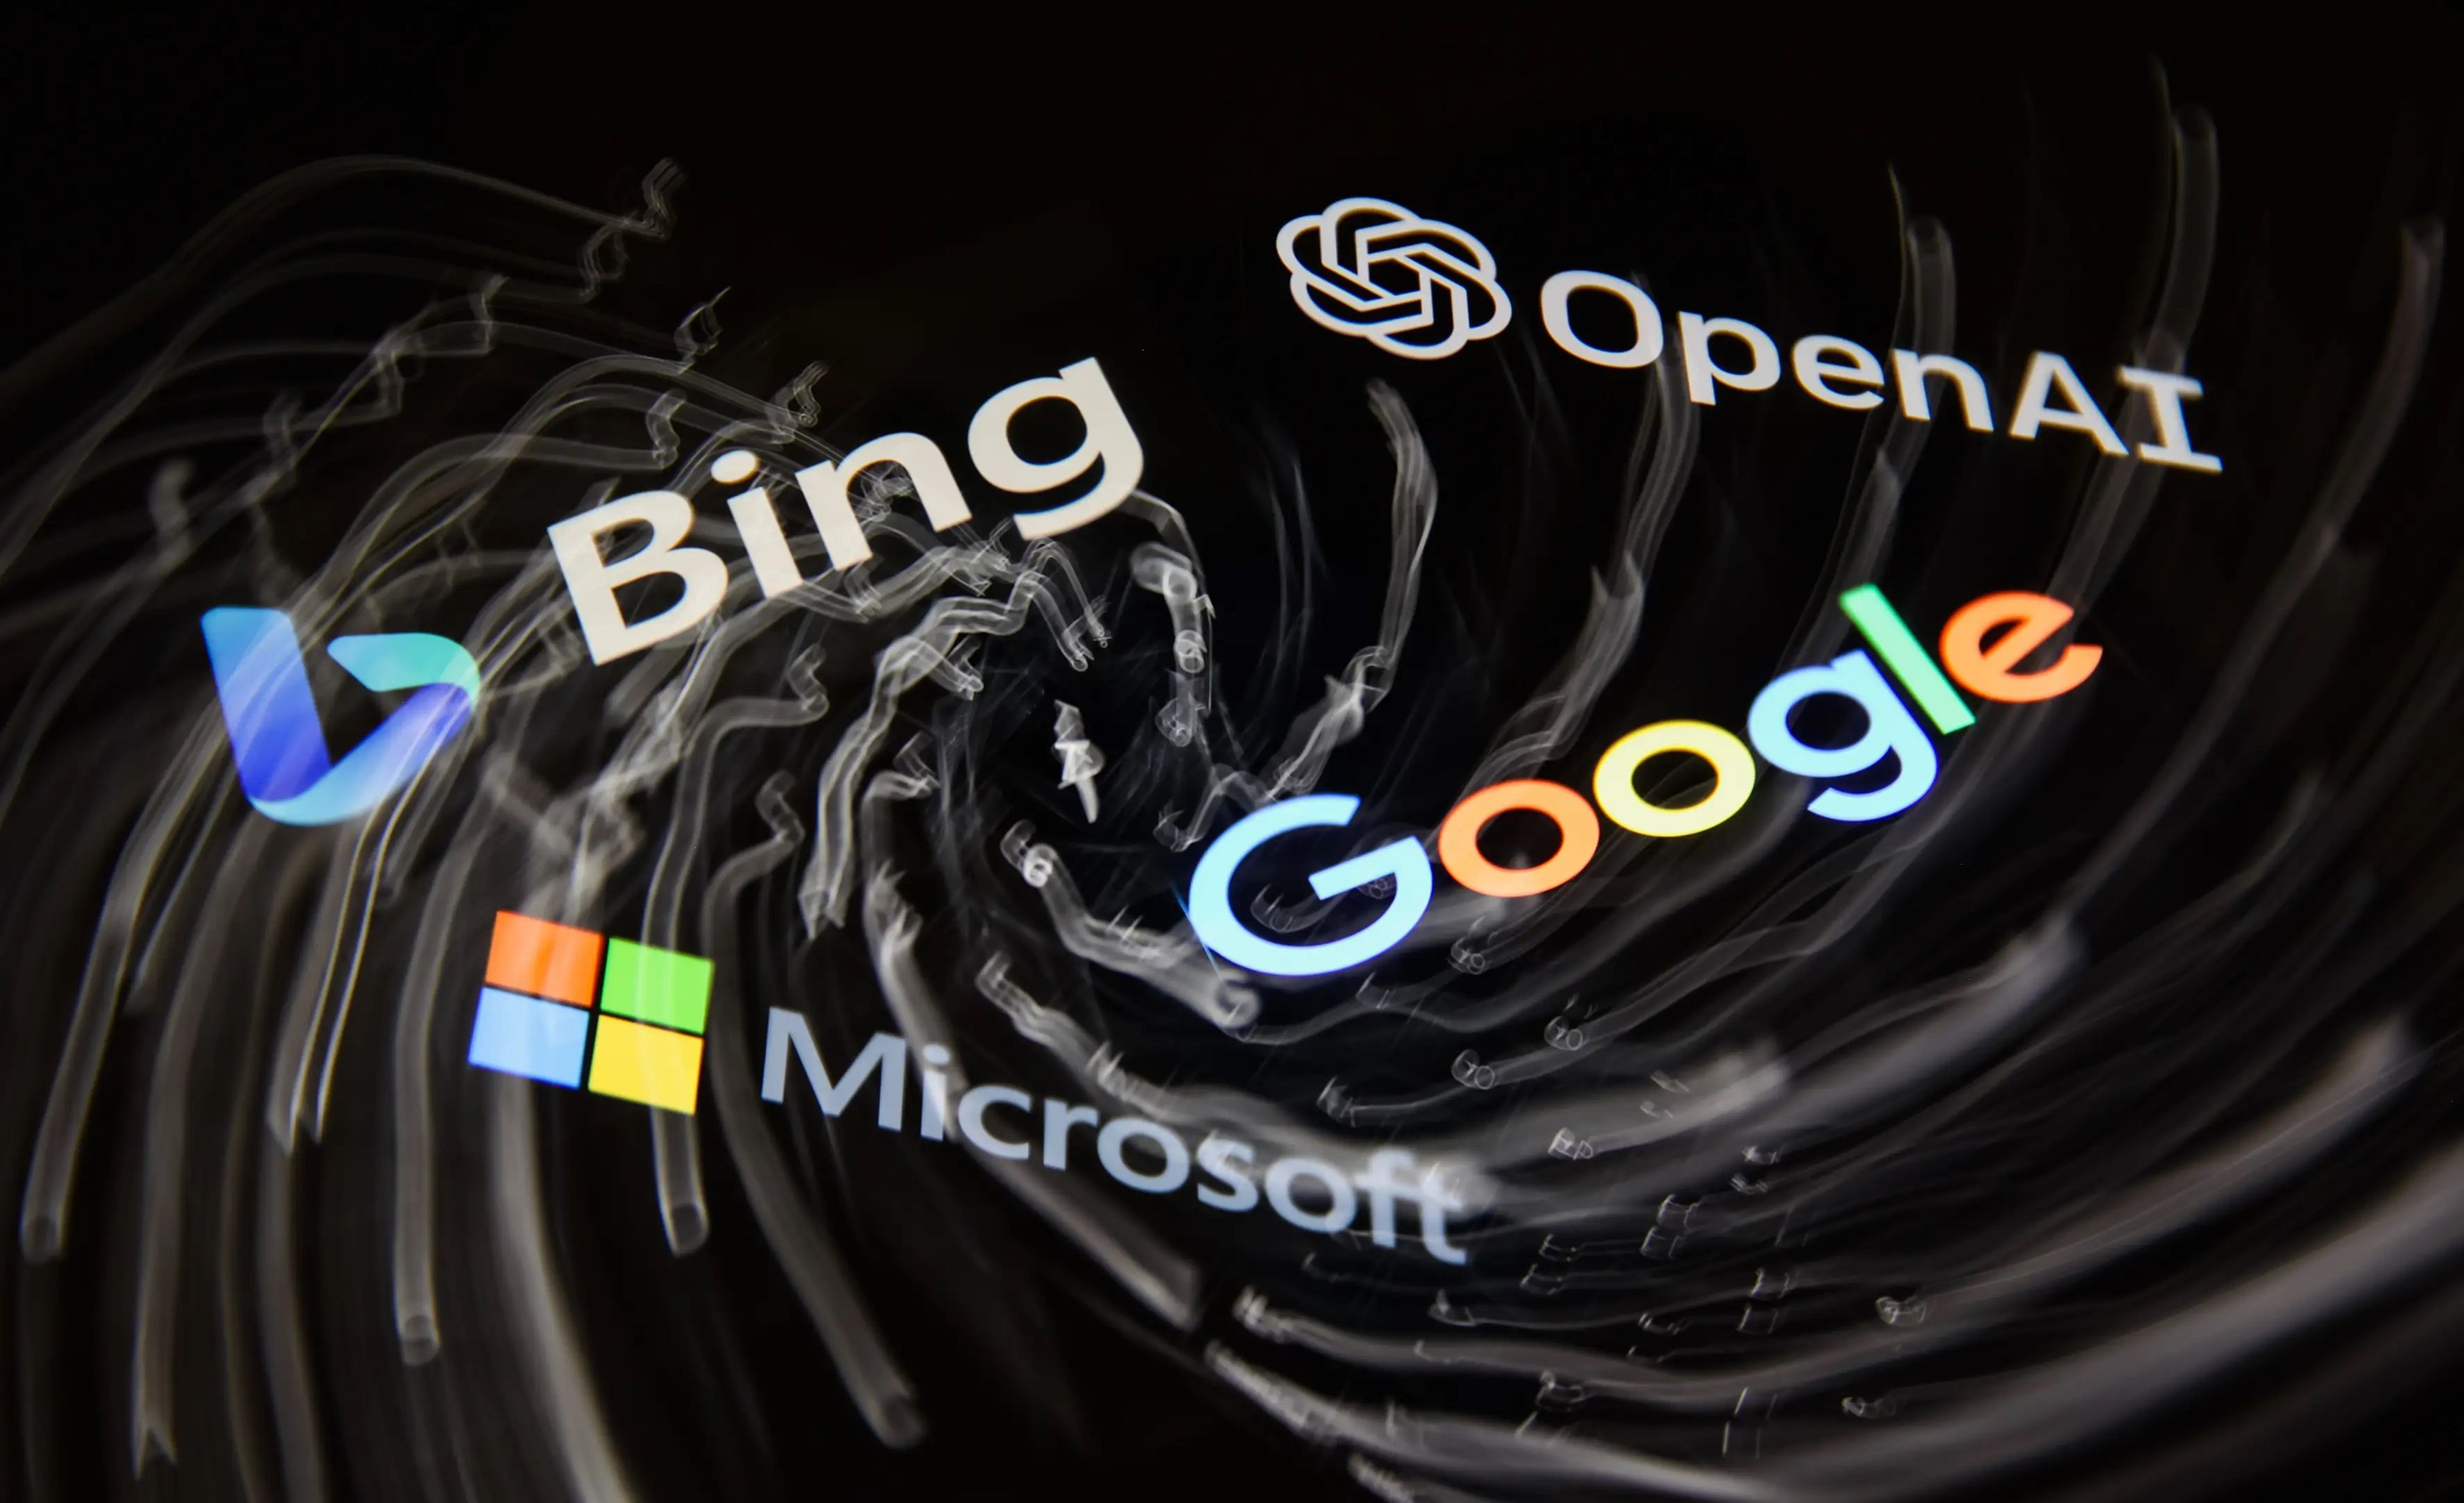 Microsoft, OpenAI y Google han anunciado nuevas funciones de inteligencia artificial en mayo.